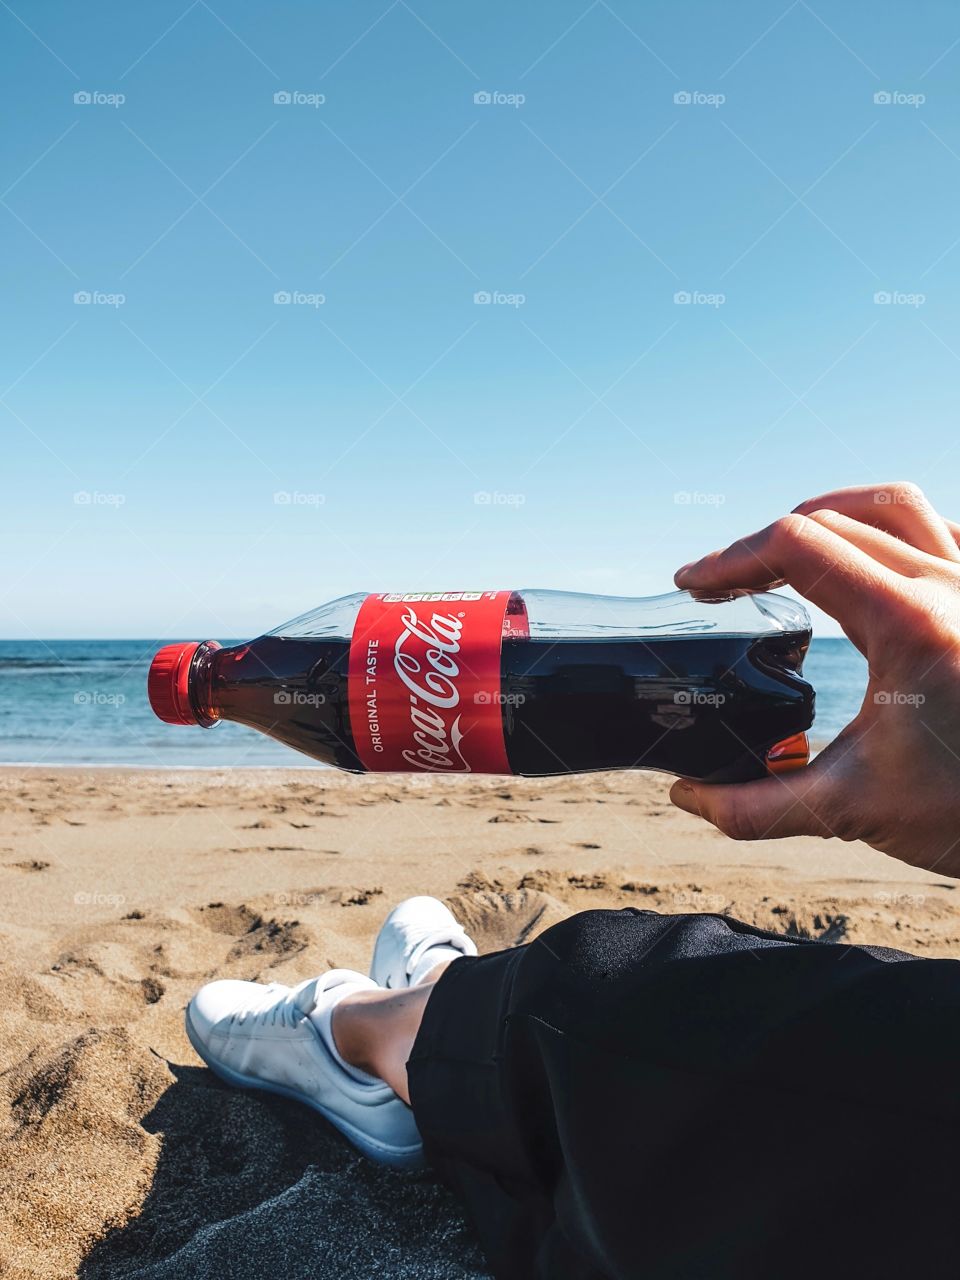 Coca Cola in the beach